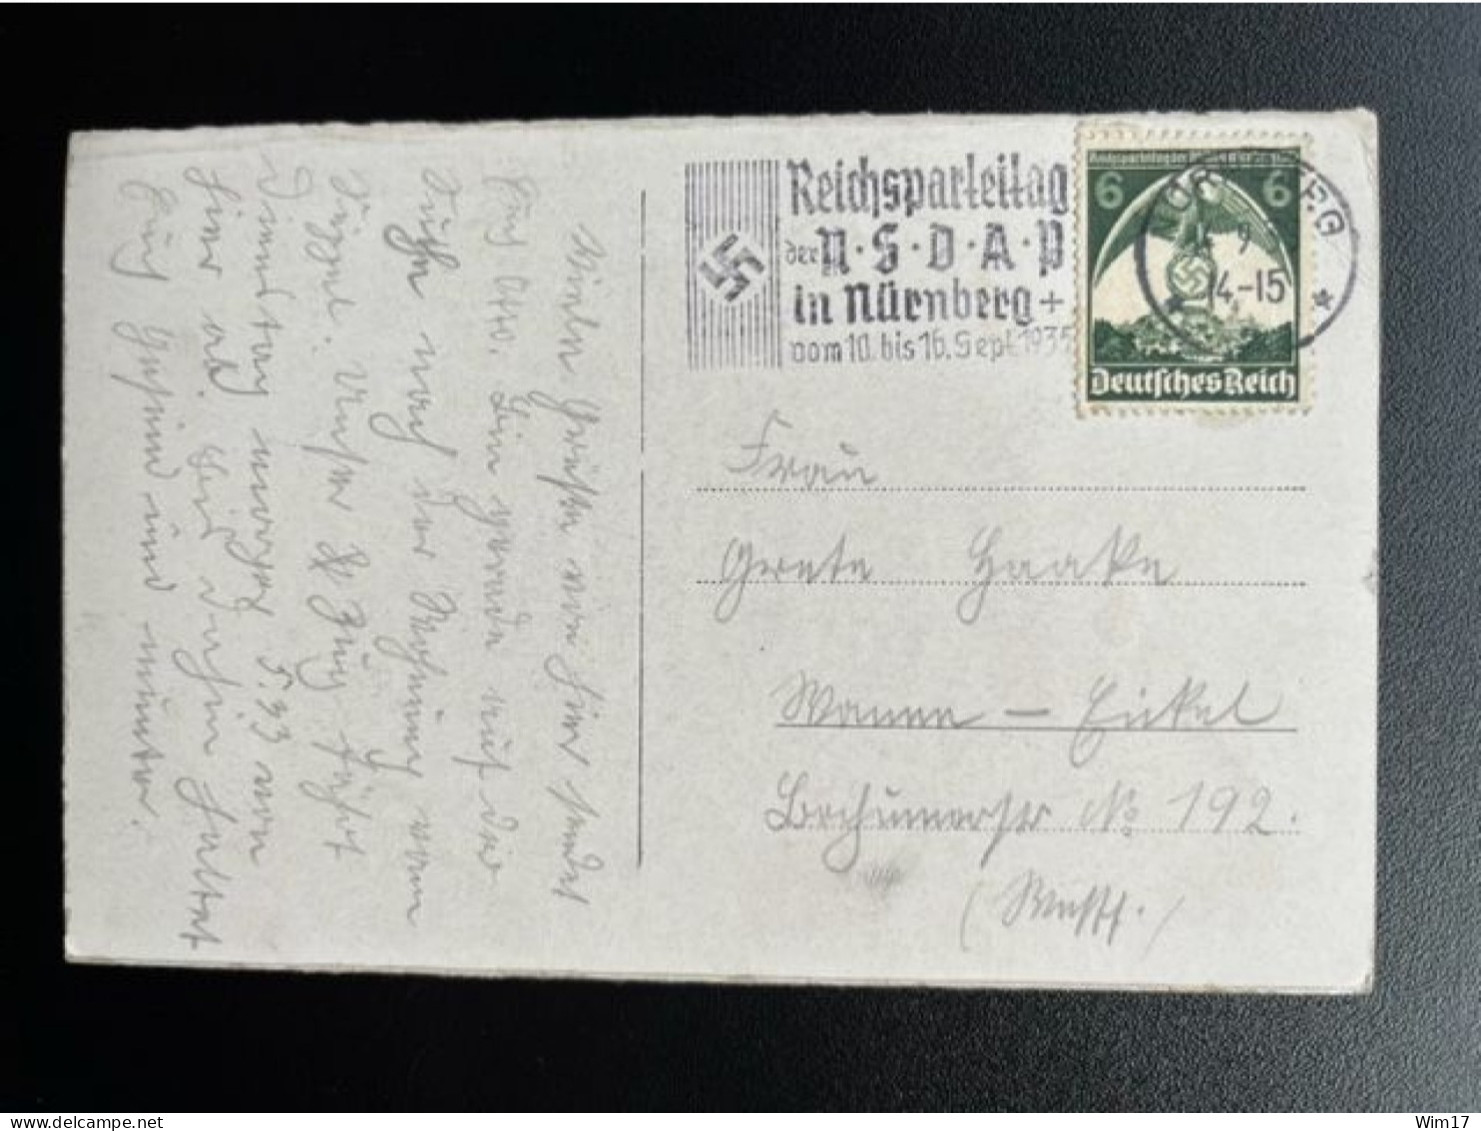 GERMANY 1935 POSTCARD NURNBERG TO WANNE EICKEL 14-09-1935 DUITSLAND DEUTSCHLAND REICHSPARTEITAG NSDAP - Private Postal Stationery